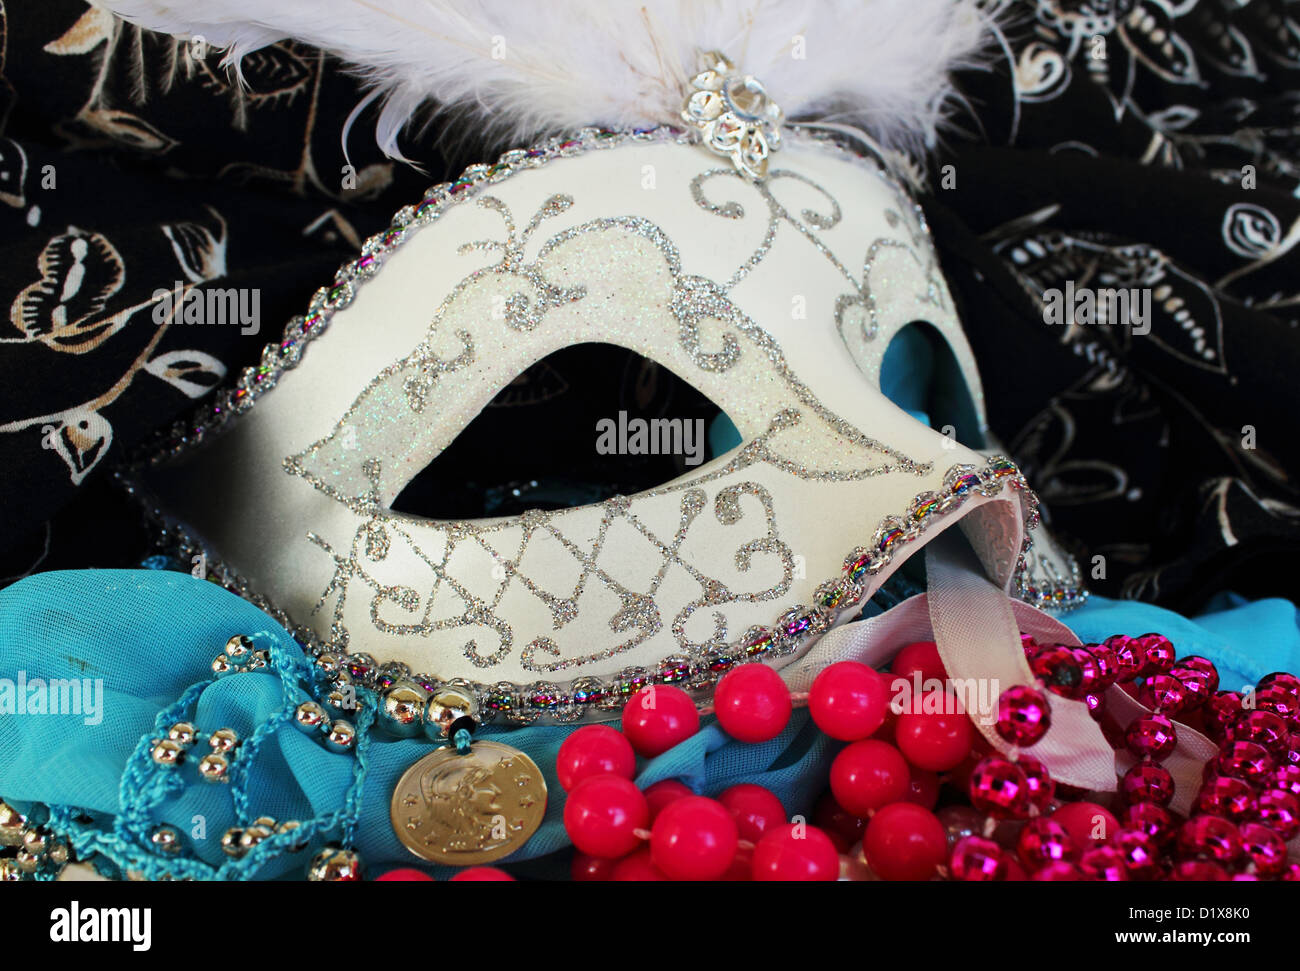 Un bal masqué ornée de paillettes et masque de rhinestons entouré de perles, bracelets et parti fabrics Banque D'Images